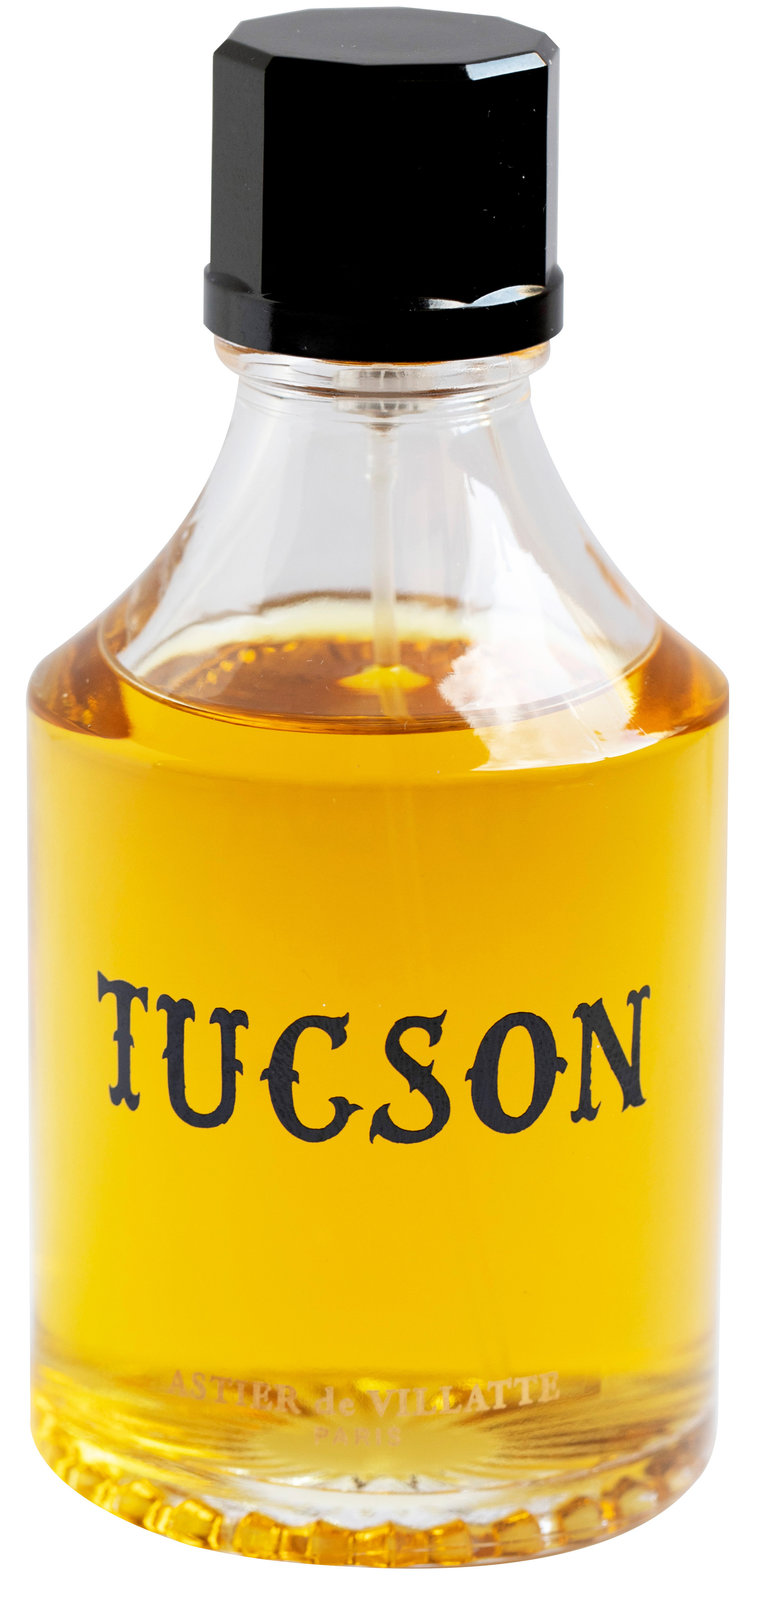 Astier de Villatte Tucson - Eau de Parfum | Ingredients